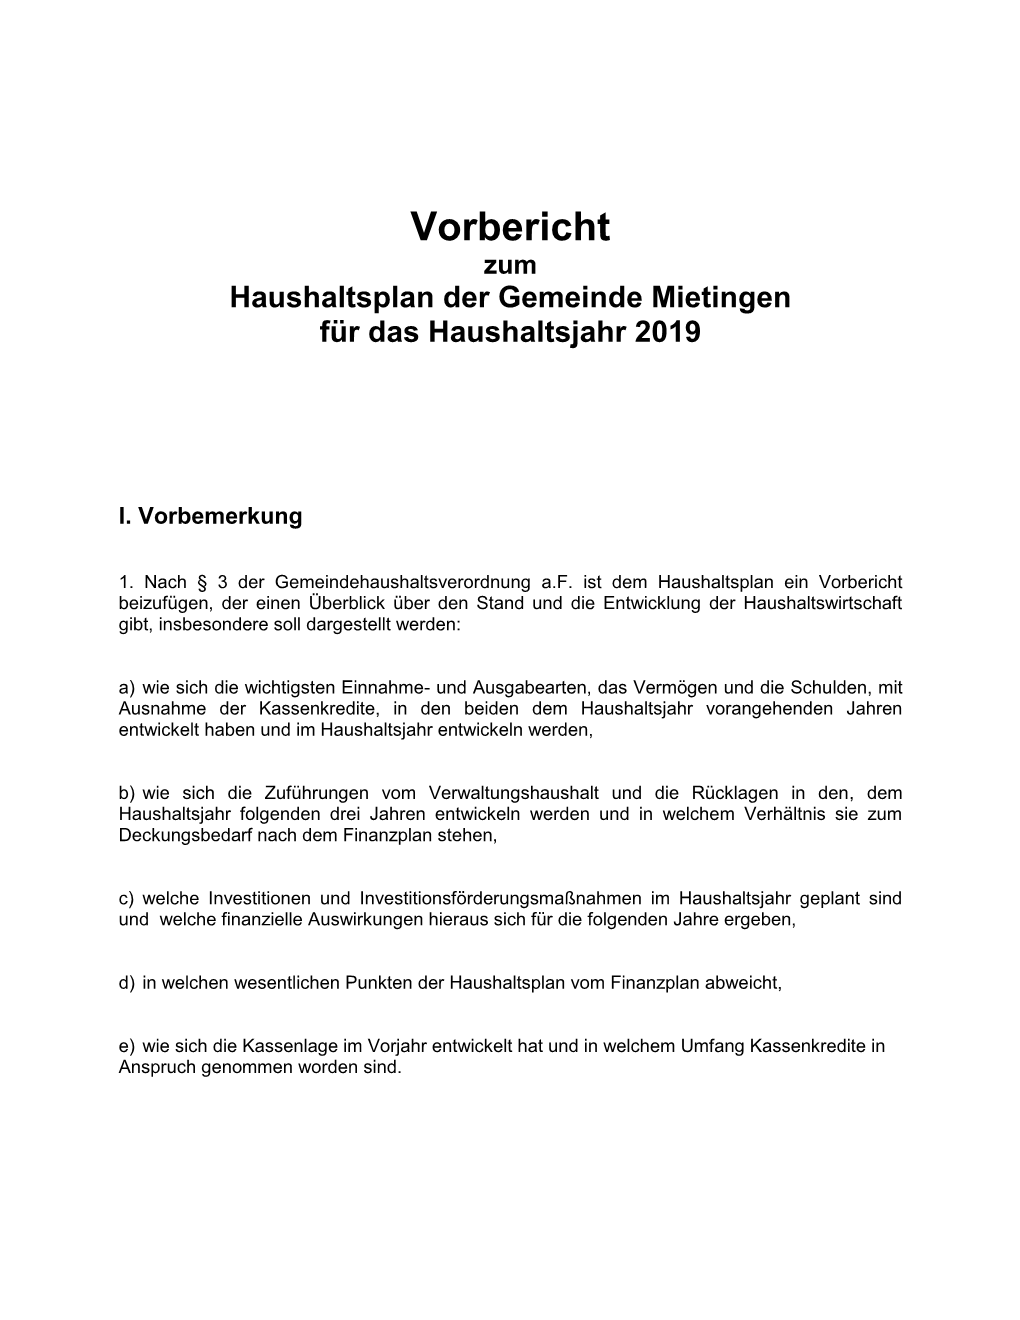 Vorbericht Zum Haushaltsplan Der Gemeinde Mietingen Für Das Haushaltsjahr 2019